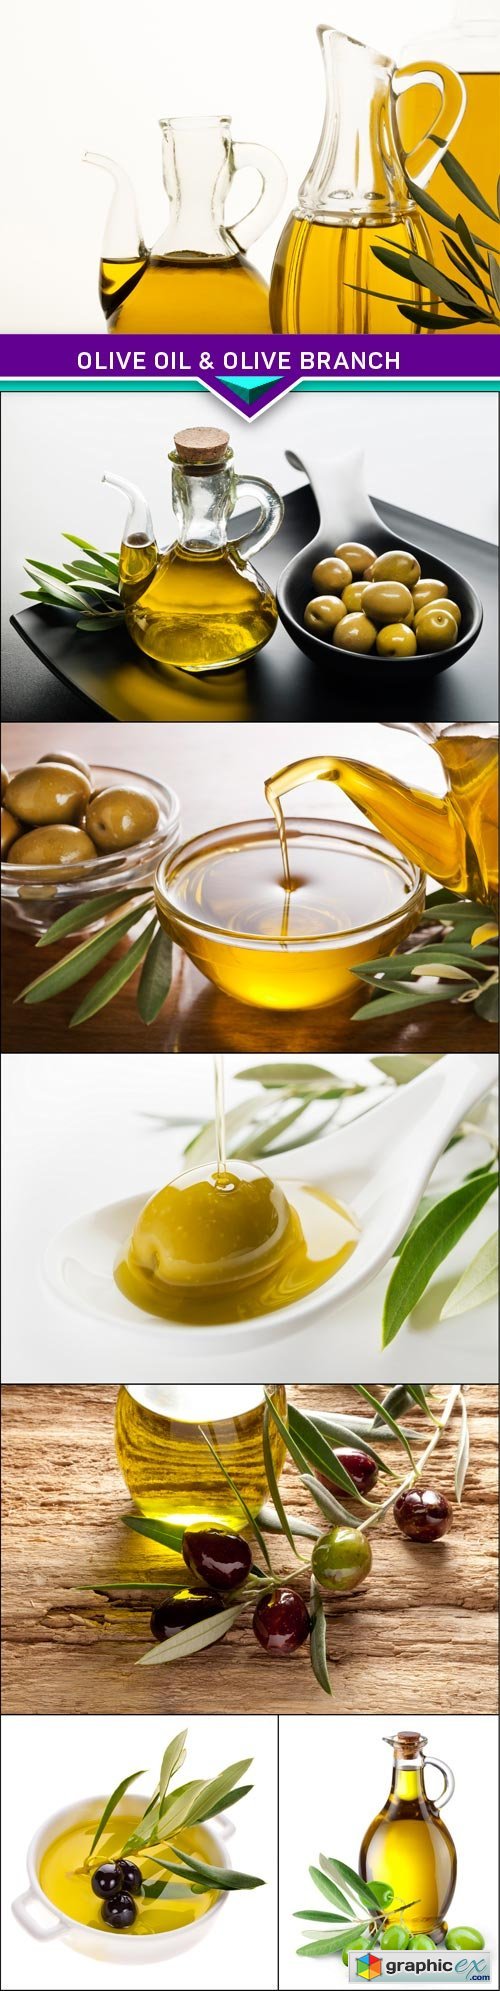 Olive oil & olive branch 7x JPEG